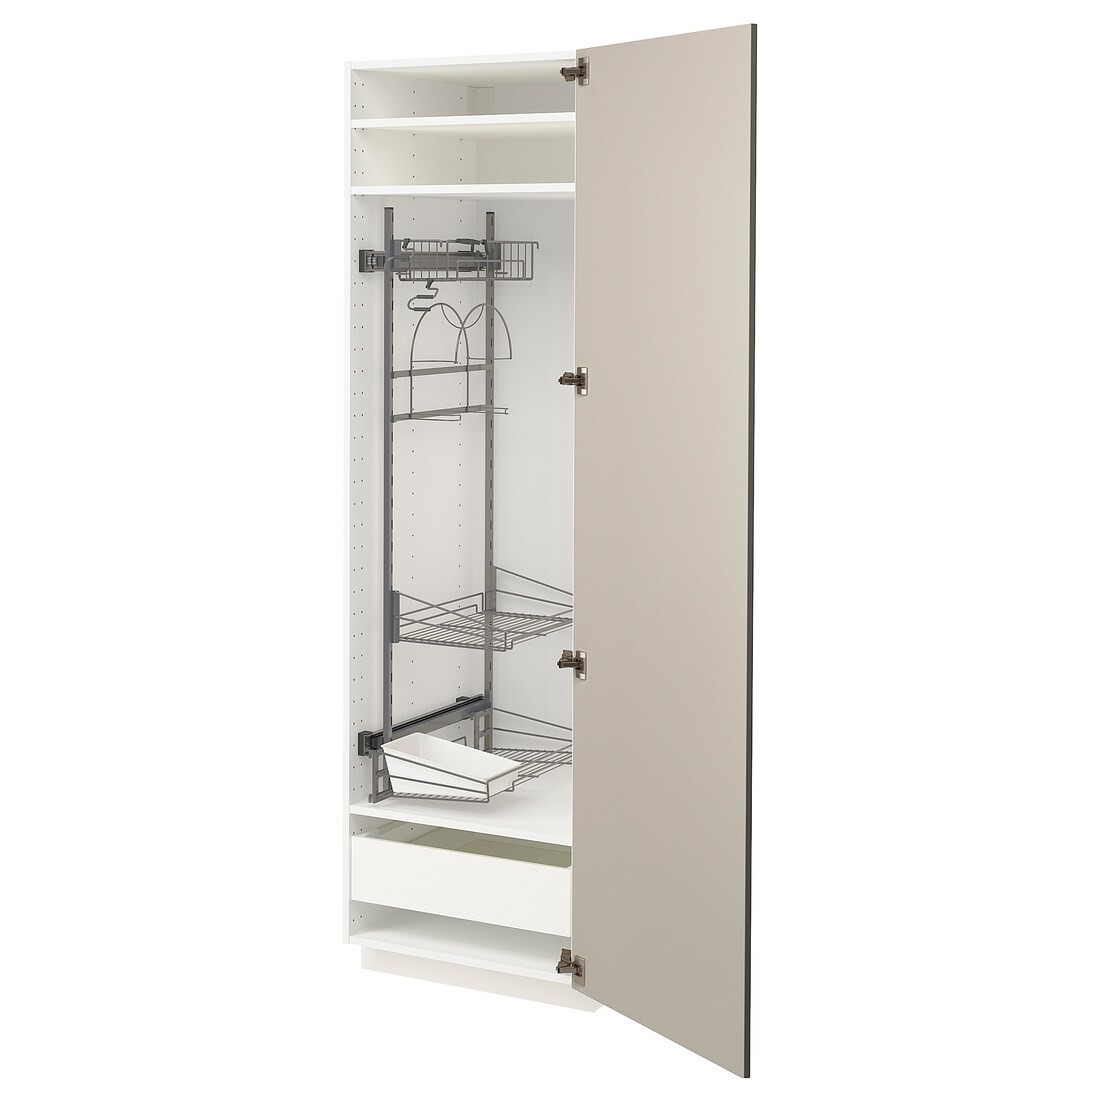 METOD МЕТОД / MAXIMERA МАКСІМЕРА Висока шафа з відділенням для аксесуарів для прибирання, білий / Stensund бежевий, 60x60x200 см